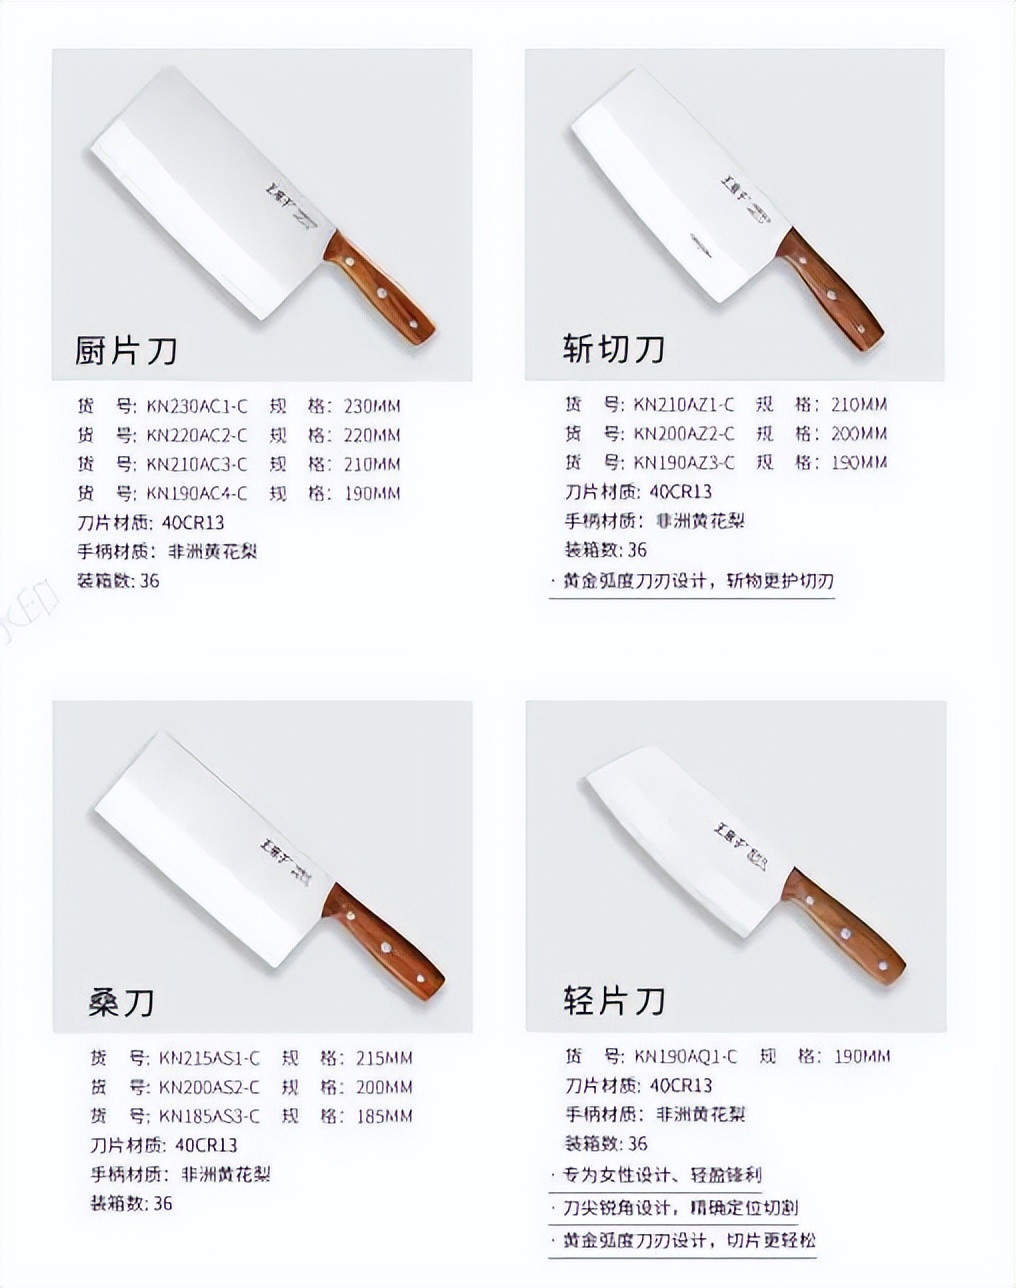 「展商推荐」王麻子厨刀专家将携新品亮相九月西安酒店用品展